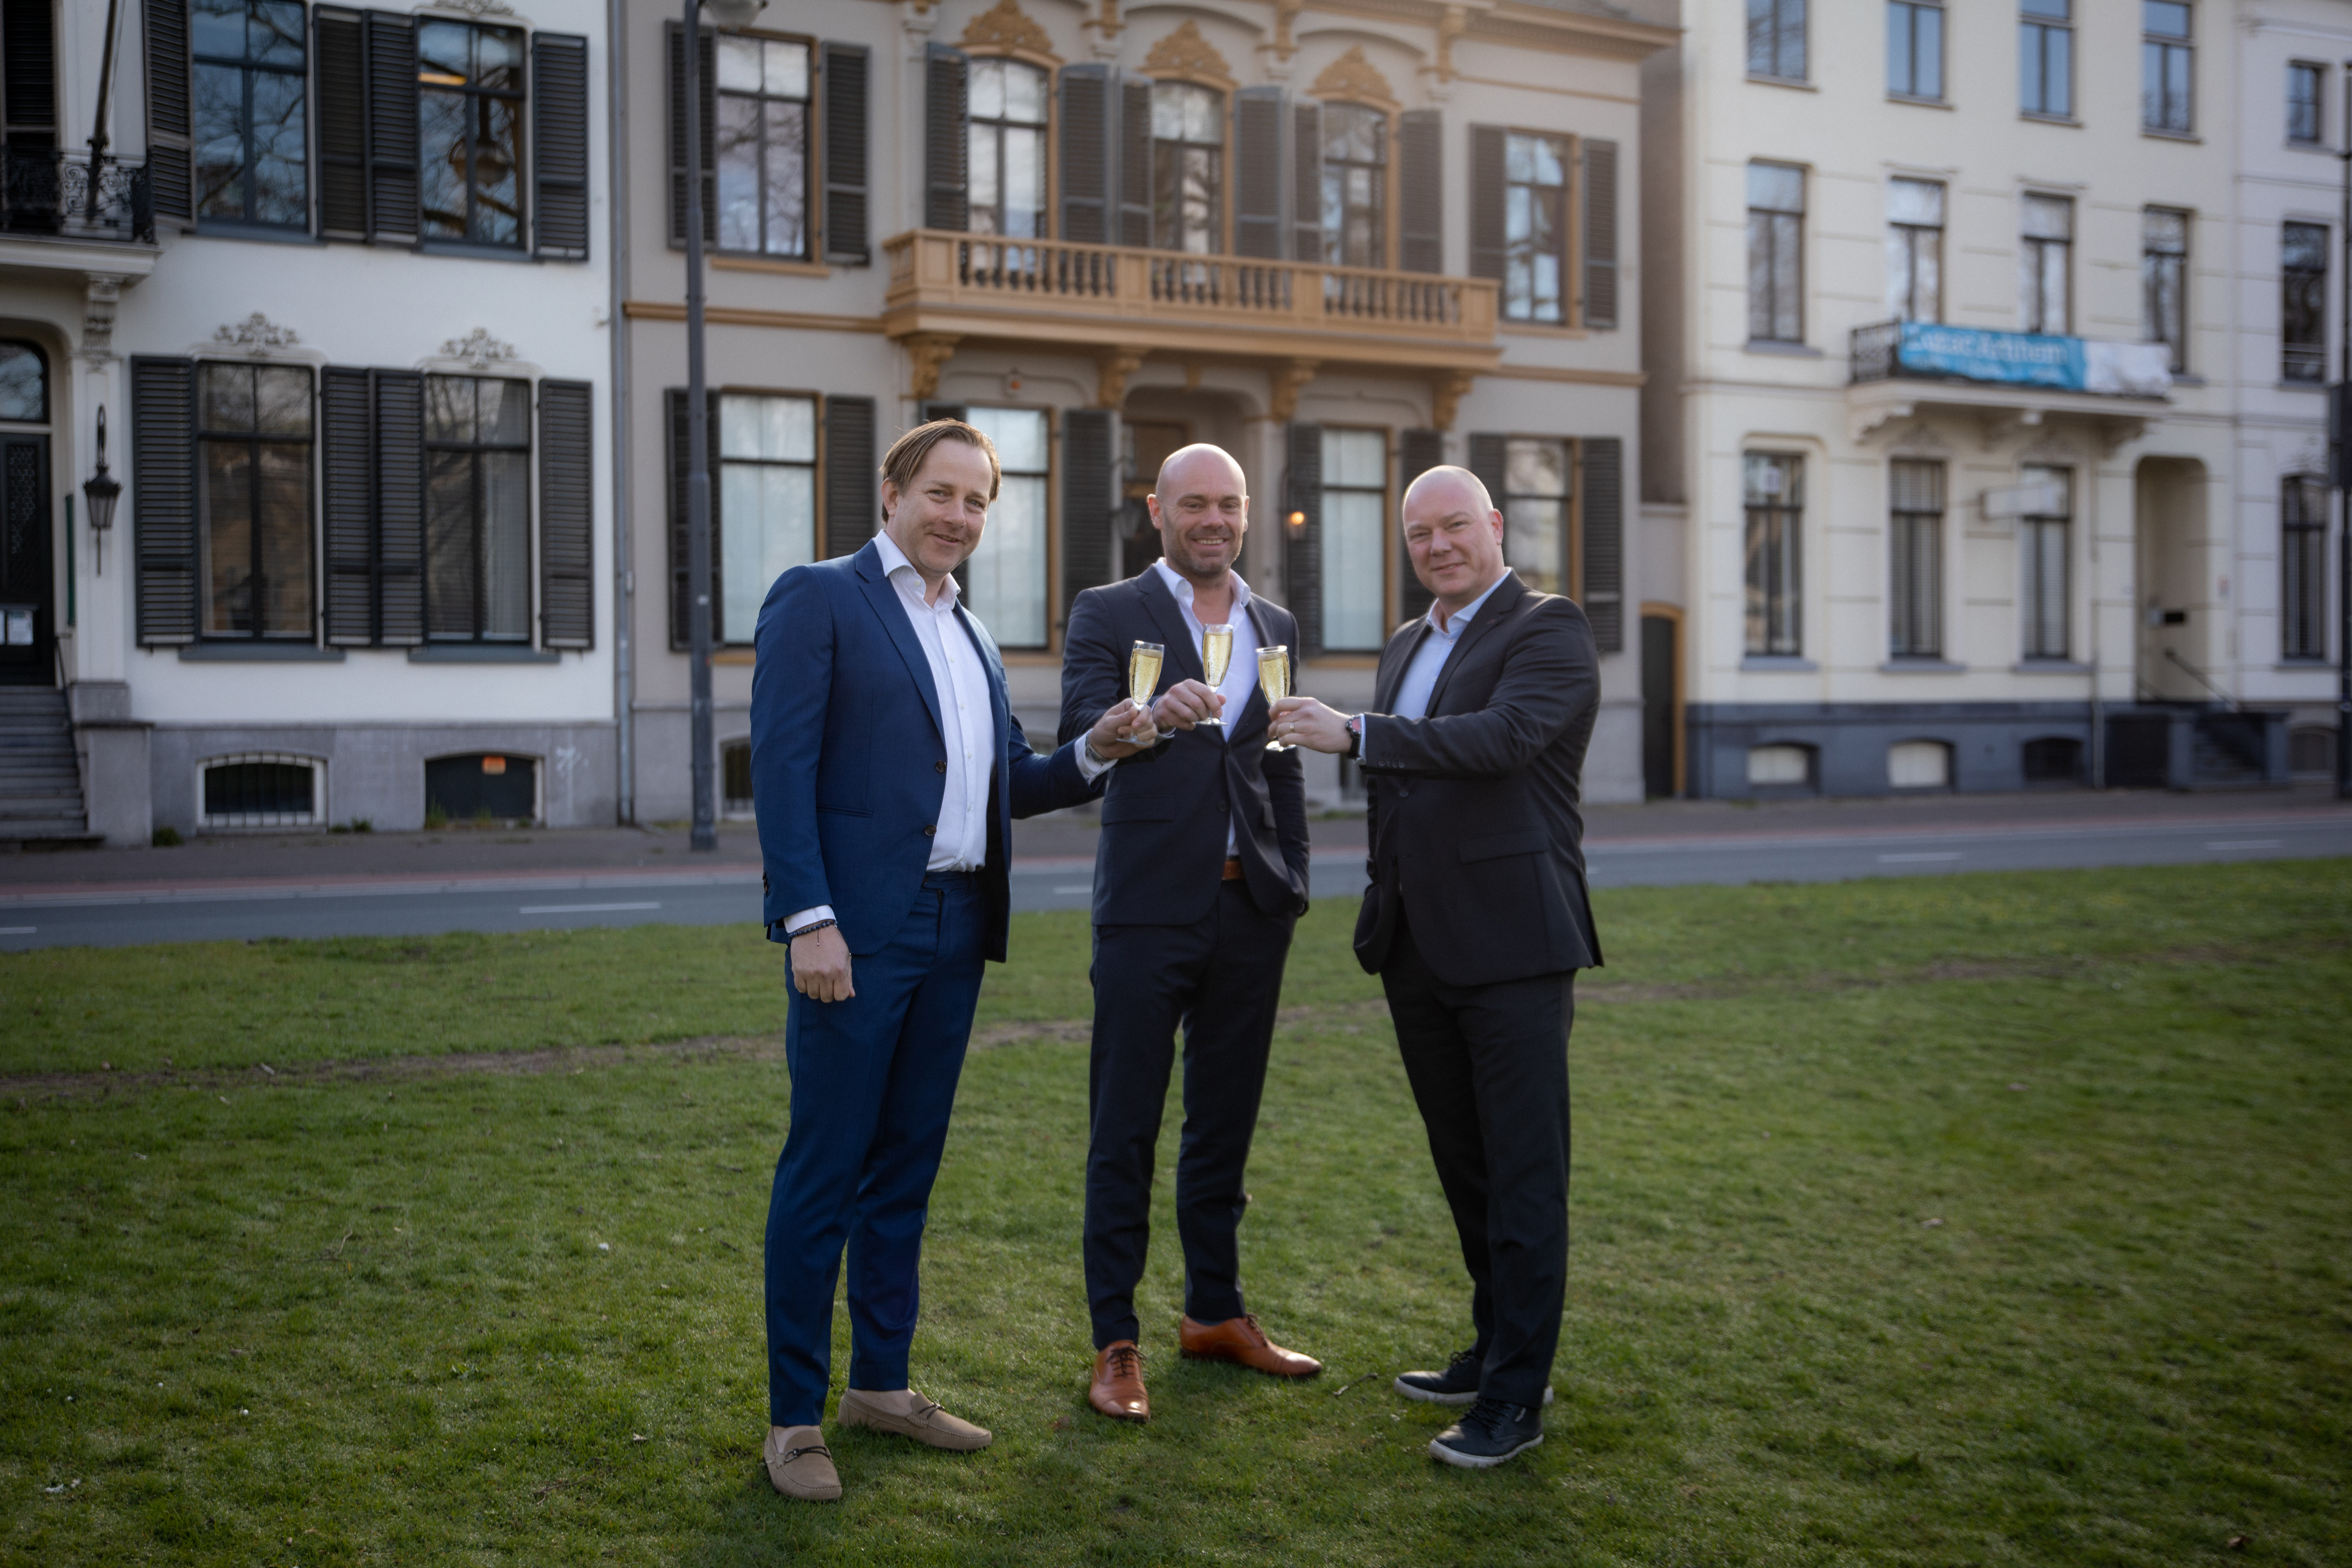 Ausems brengt brede expertise met nieuwe partners Mattijs Boer en Jeroen Radsma